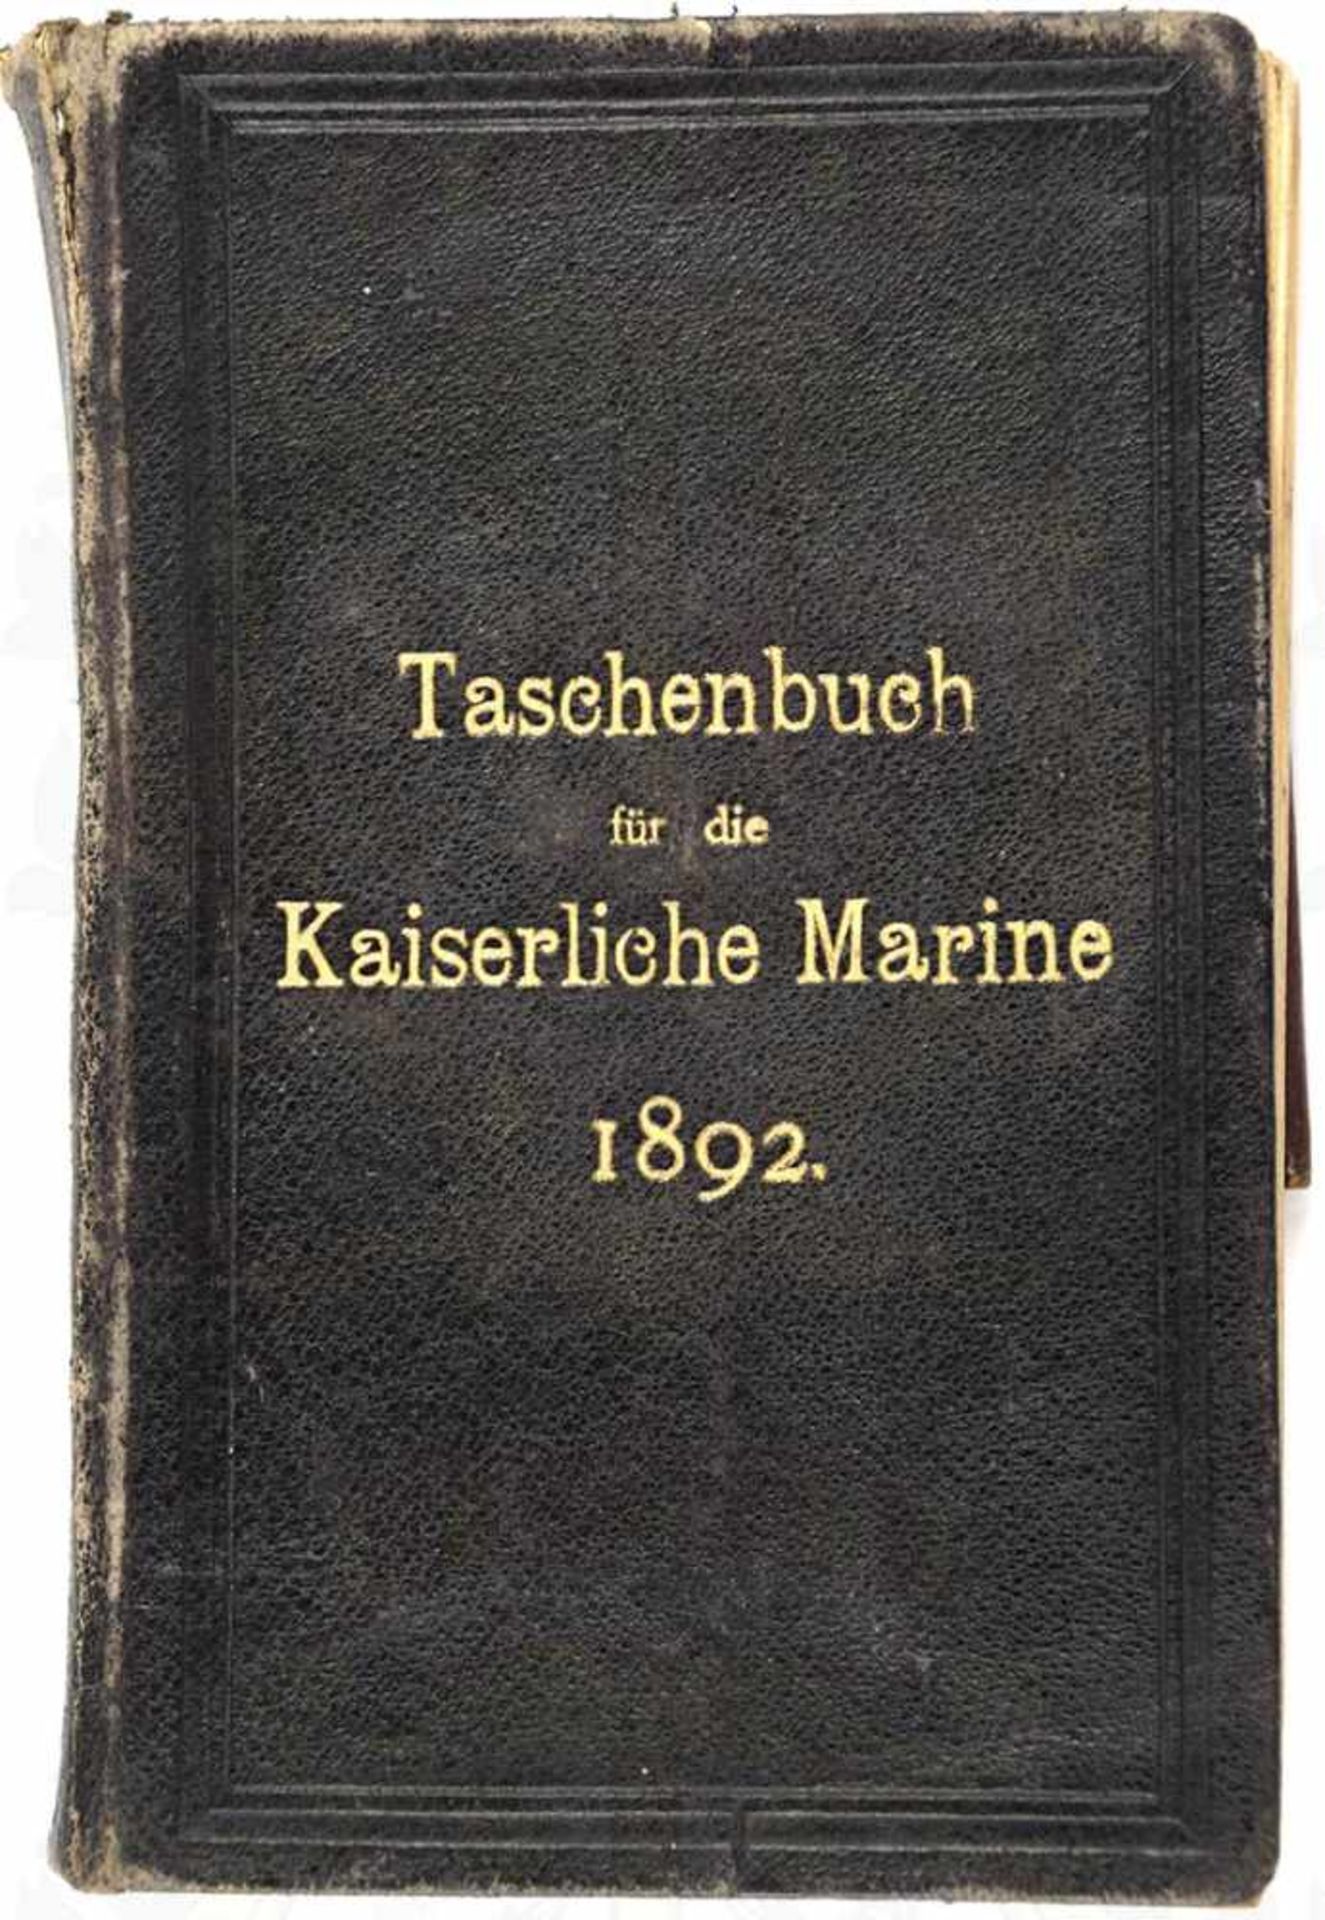 TASCHENBUCH DER KAISERLICHEN MARINE, Erster Jahrgang 1892, Hrsg. Capelle, Berlin 1892, 410 S.,